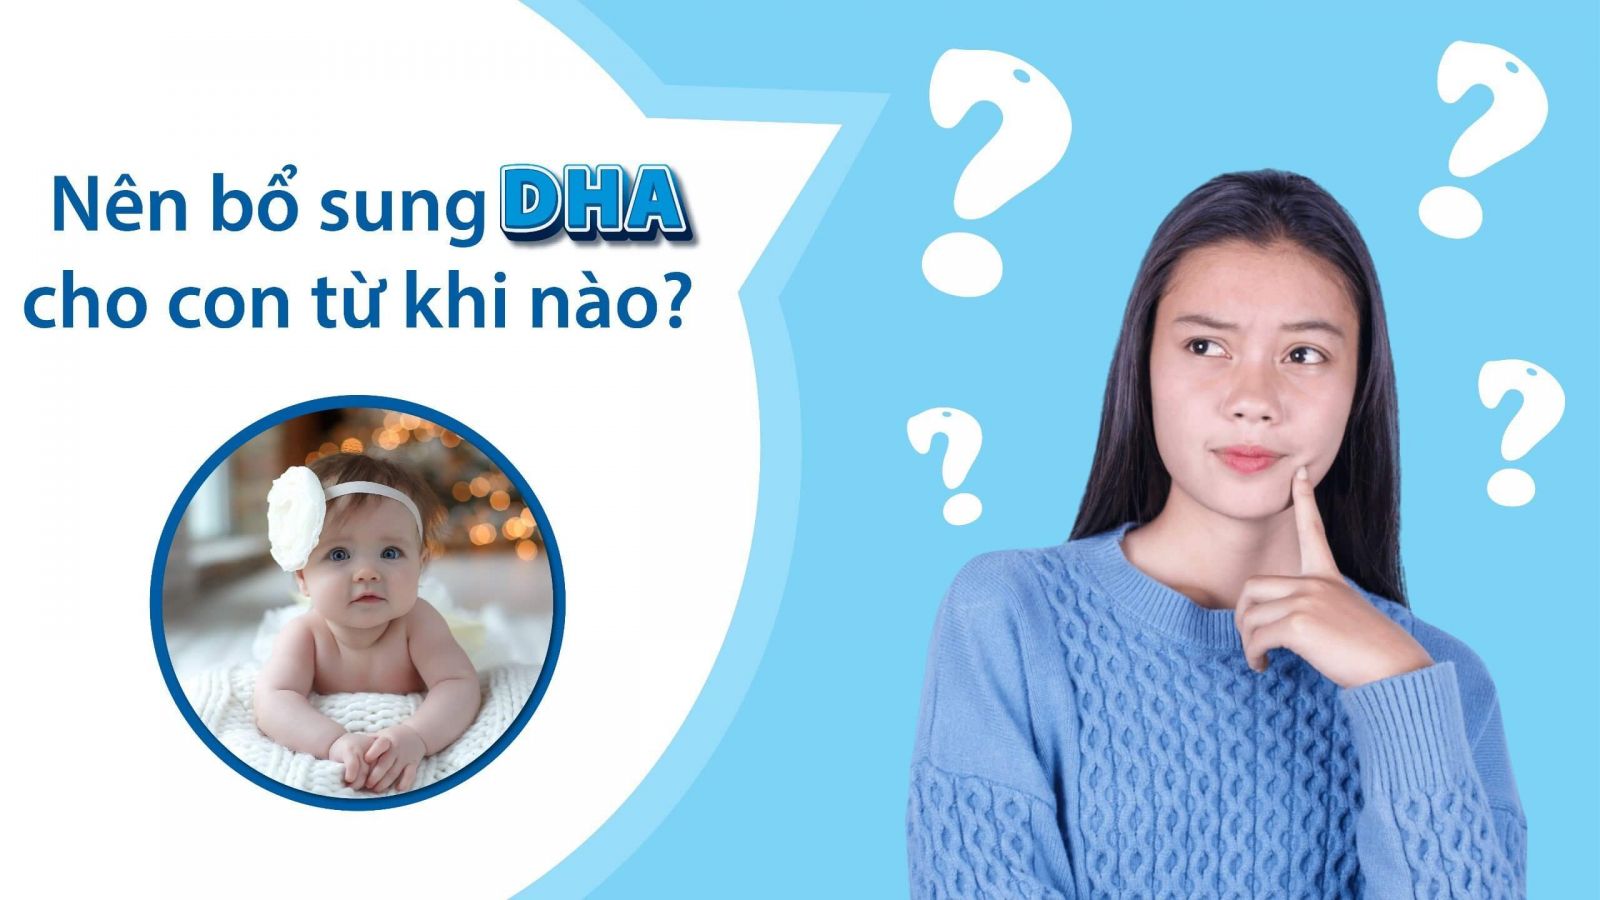 Nên bổ sung DHA cho trẻ từ khi nào?